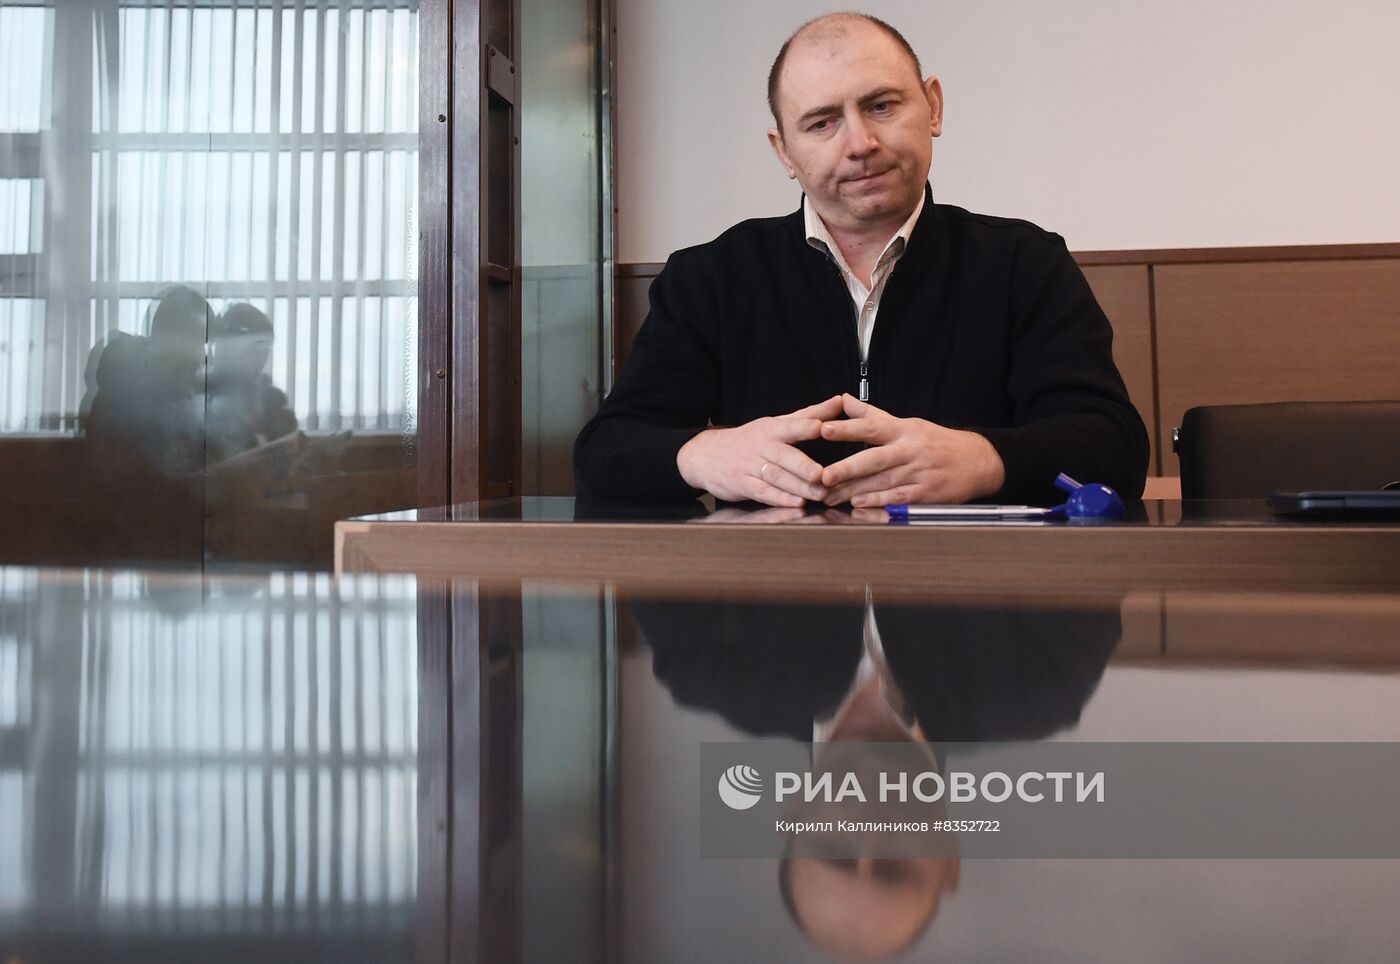 Заседание суда по делу А. Котова, обвиняемого в отравлении семьи арбузами